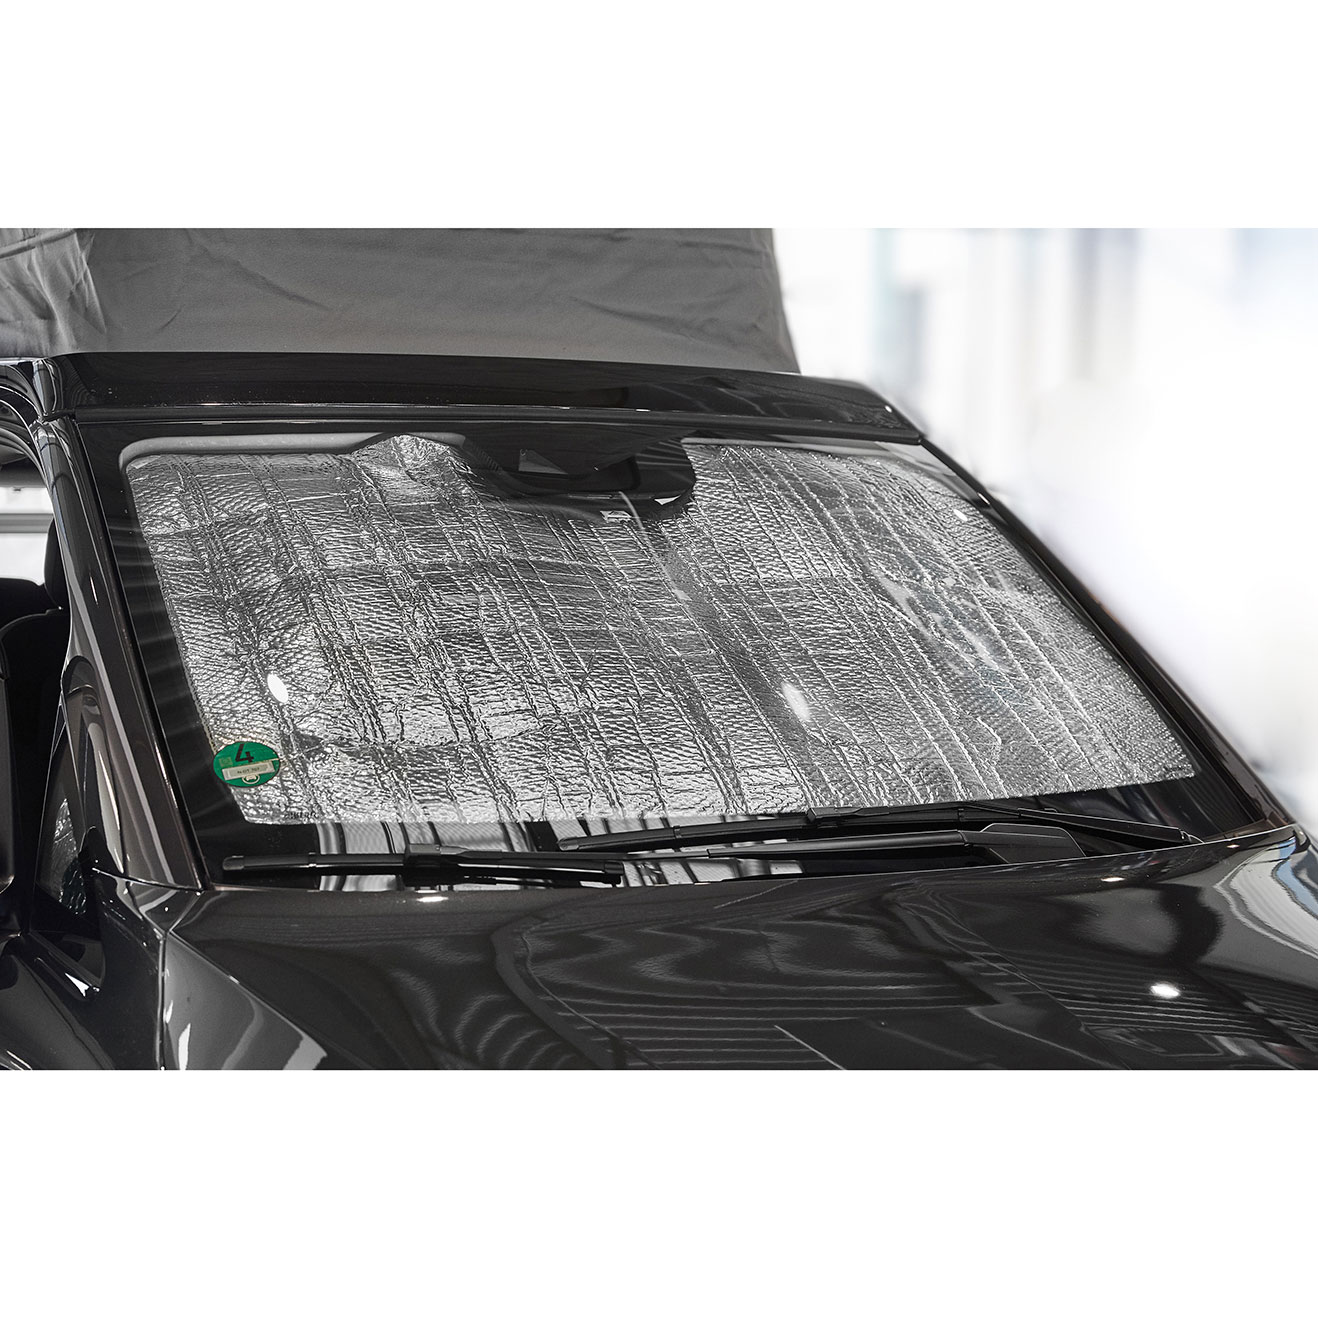 Brandrup ISOLITE® Inside für Fahrerhausfenster, 5-teilig